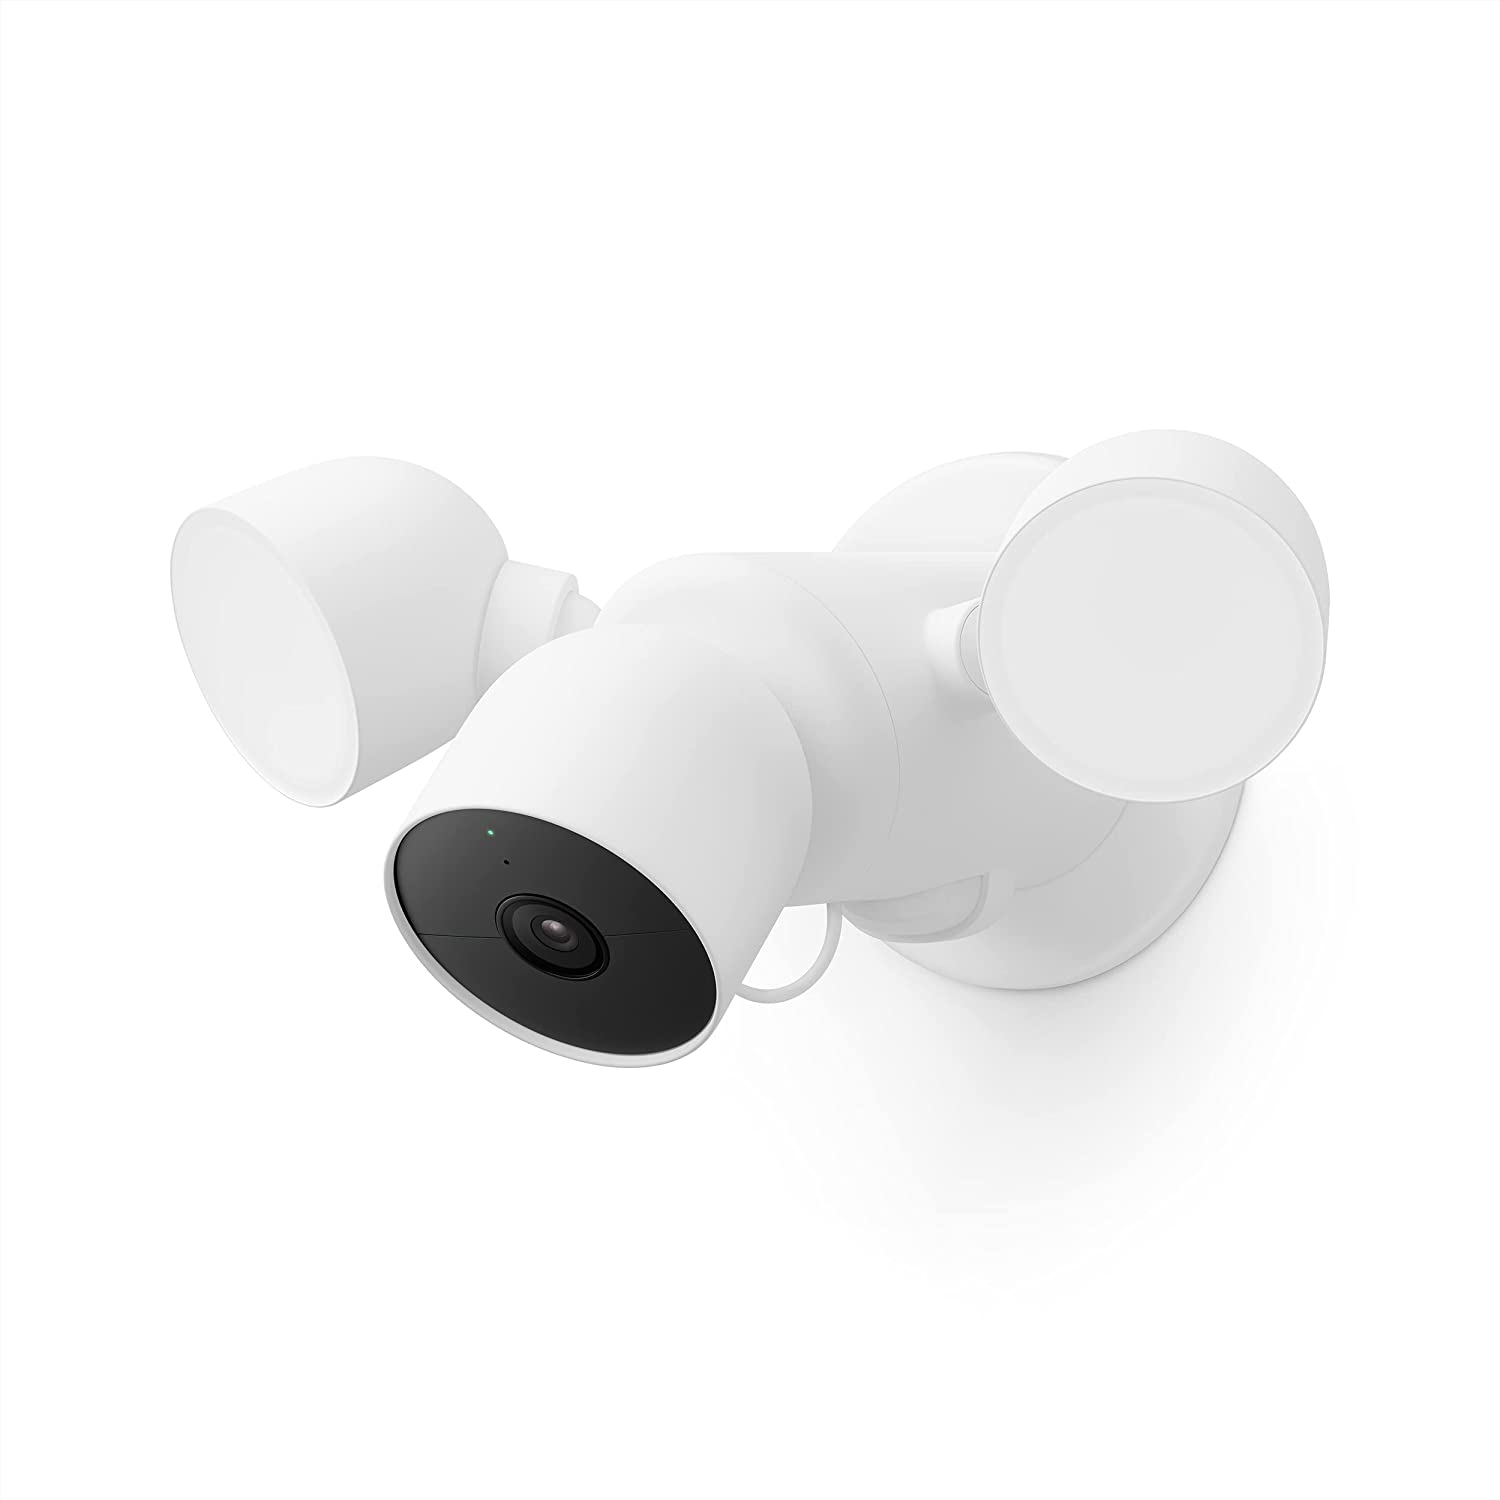 Amazon.com : Google Nest Cam with Floodlight - Outdoor Camera - Floodlight Security Camera : Electronics $199.99